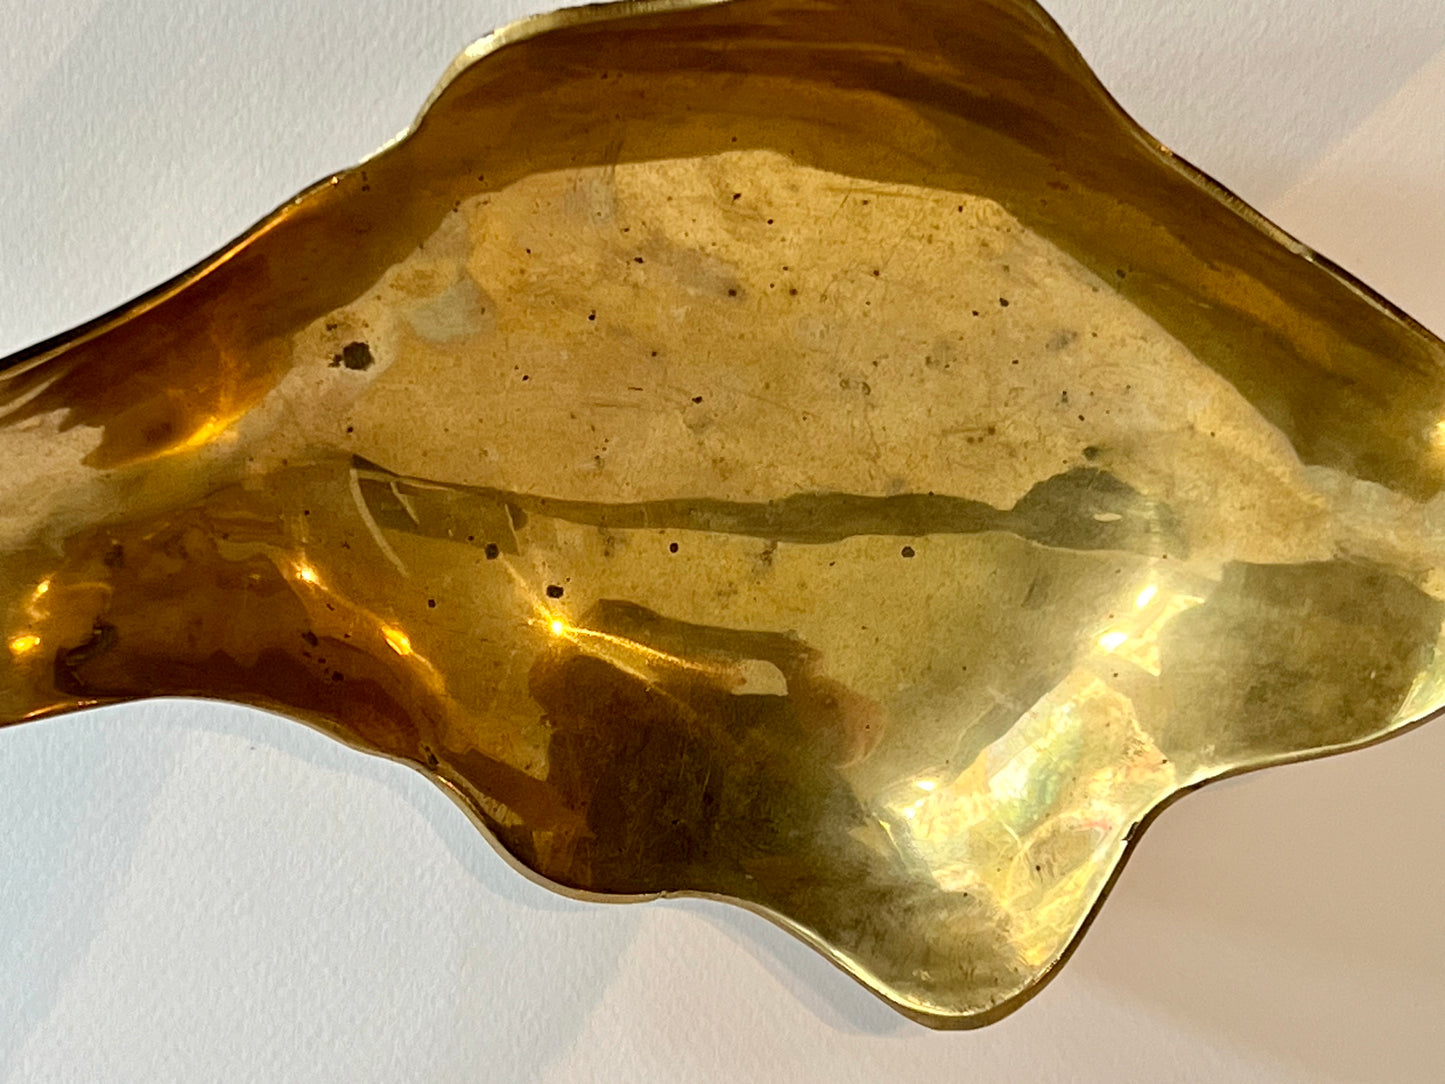 Sculptural brass bowl